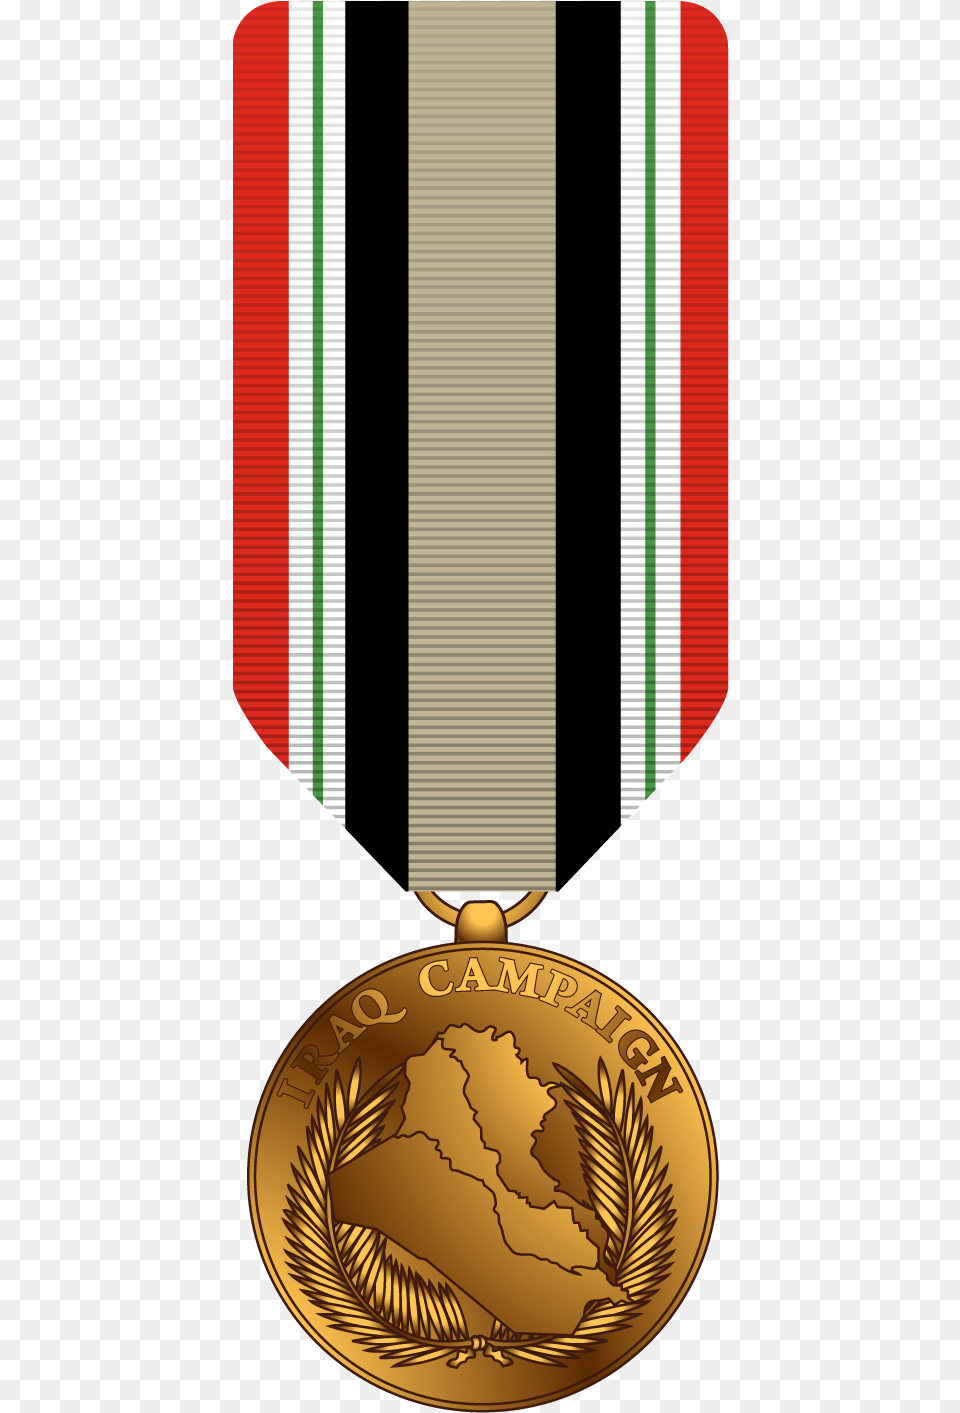 Bronze Medal Military Medal, Gold, Gold Medal, Trophy Free Transparent Png